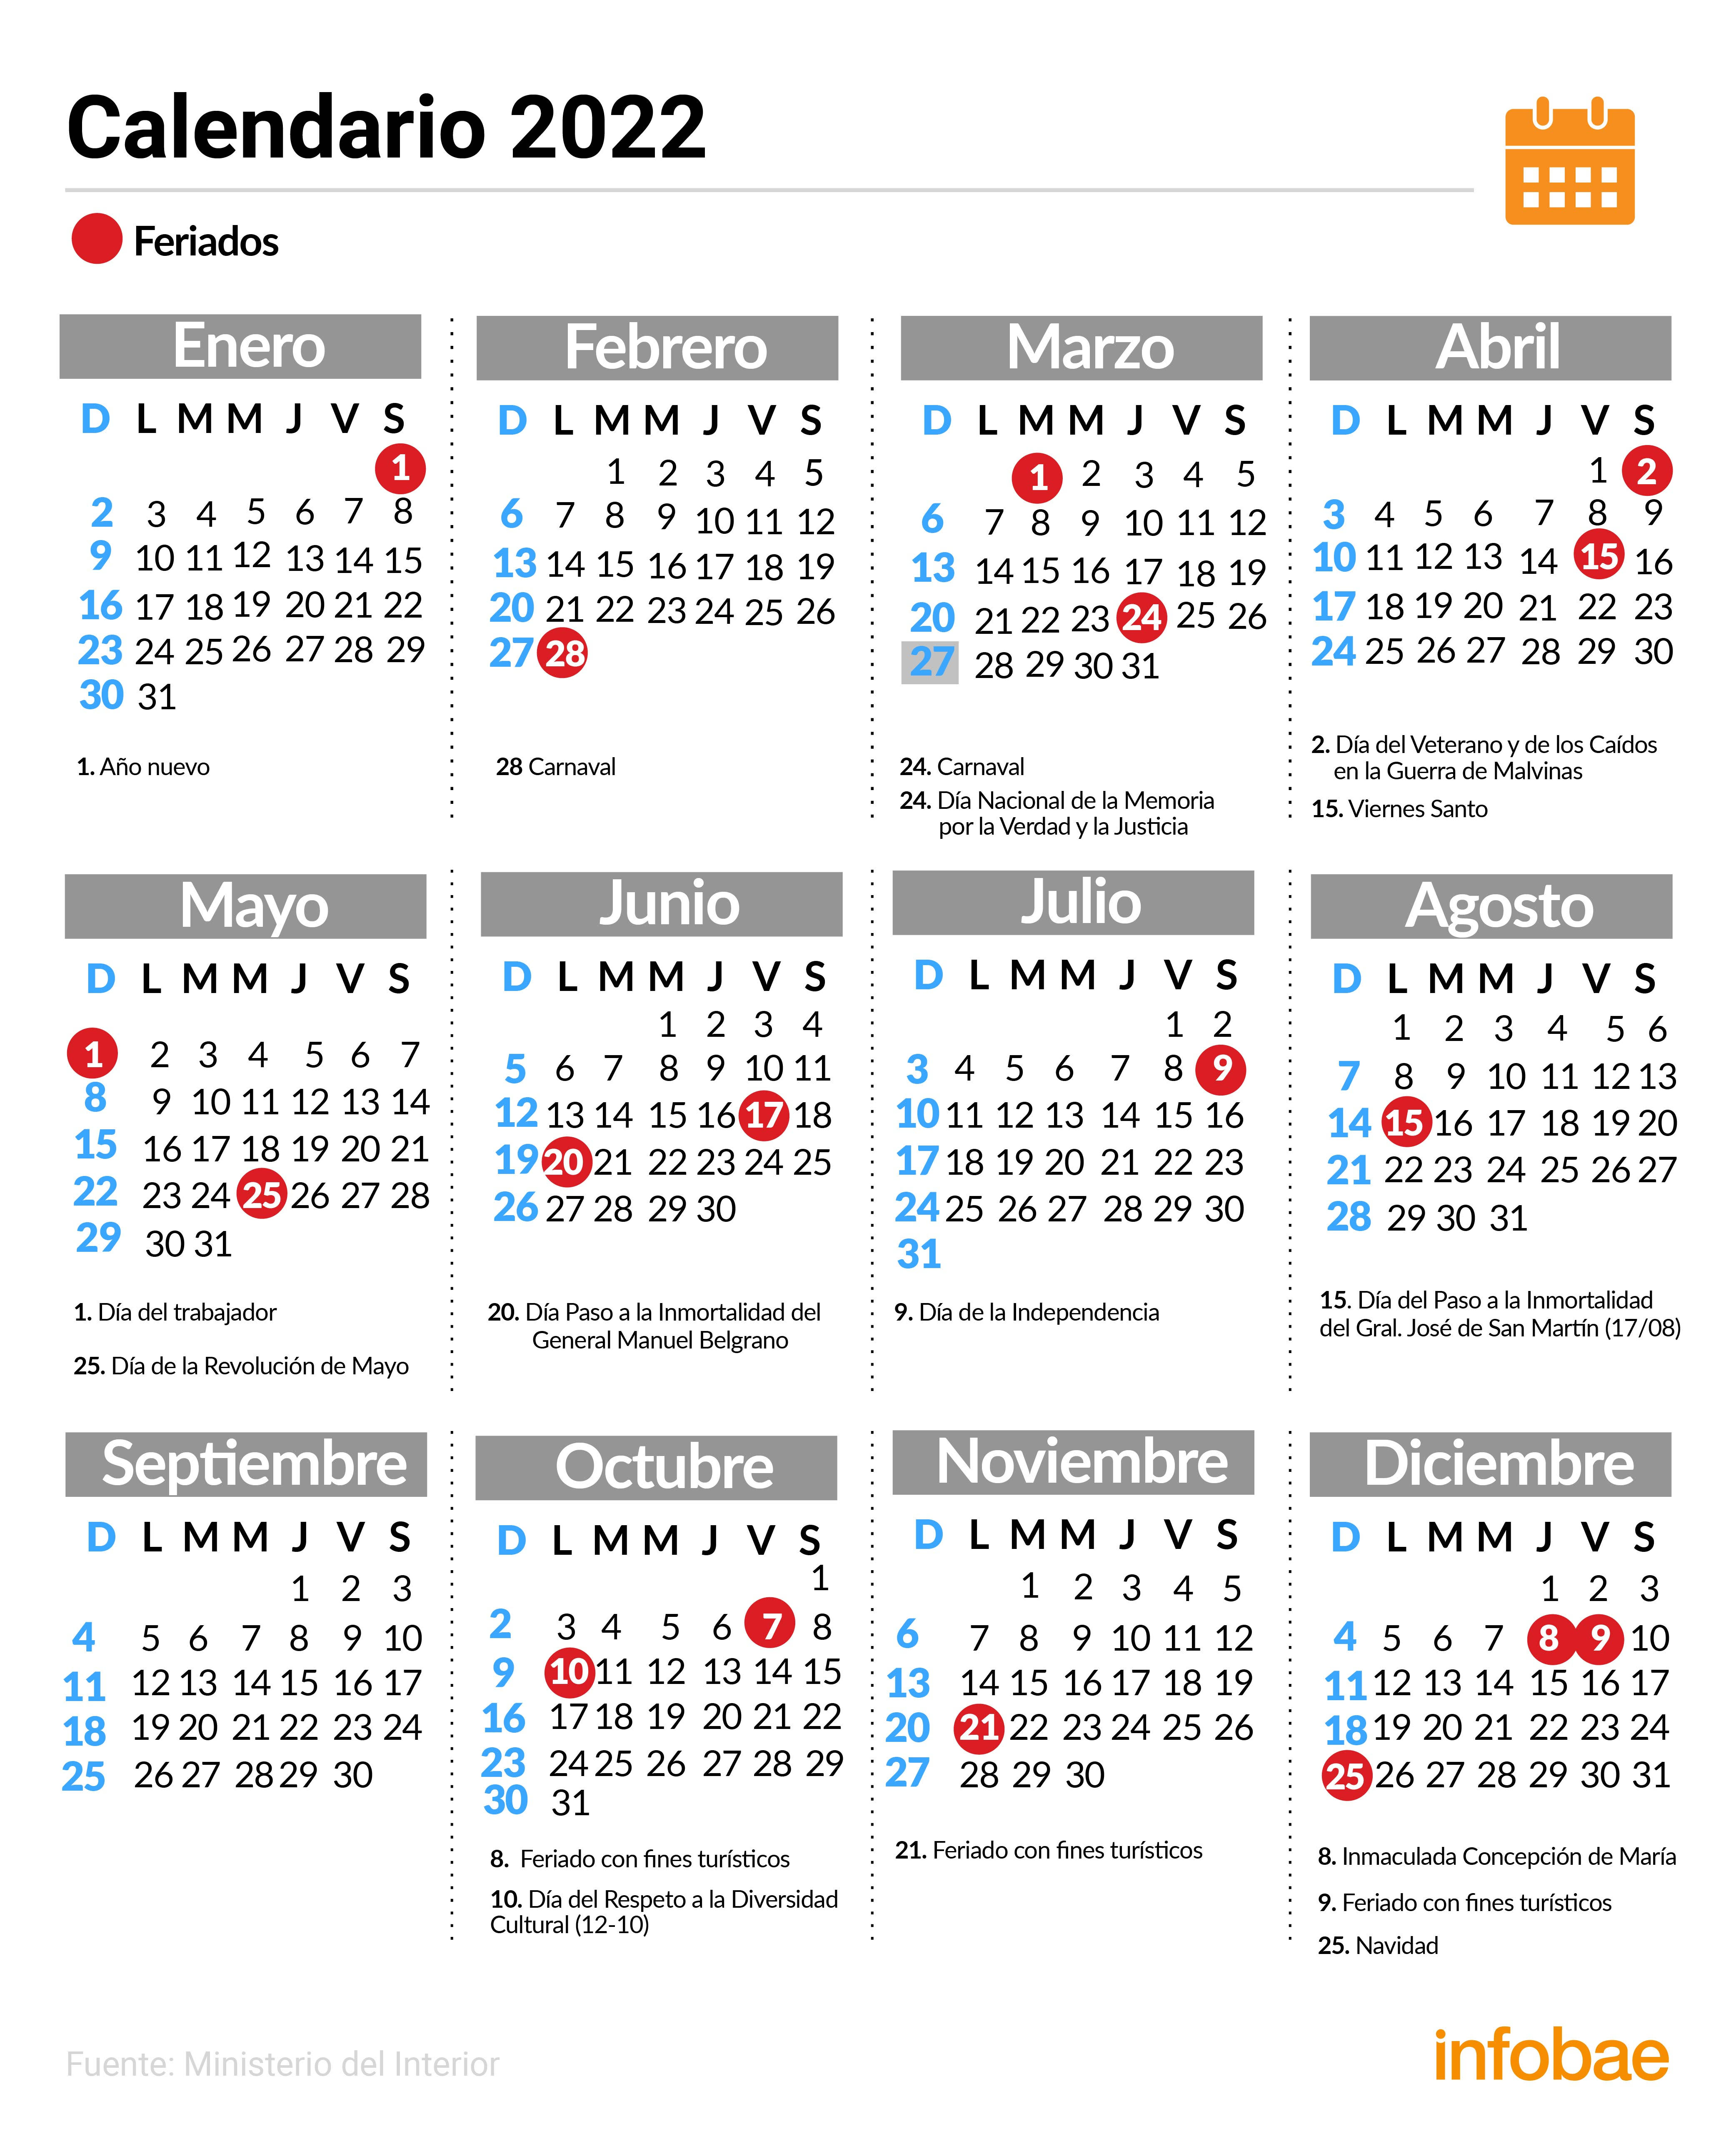 El calendario con los feriados de este año 